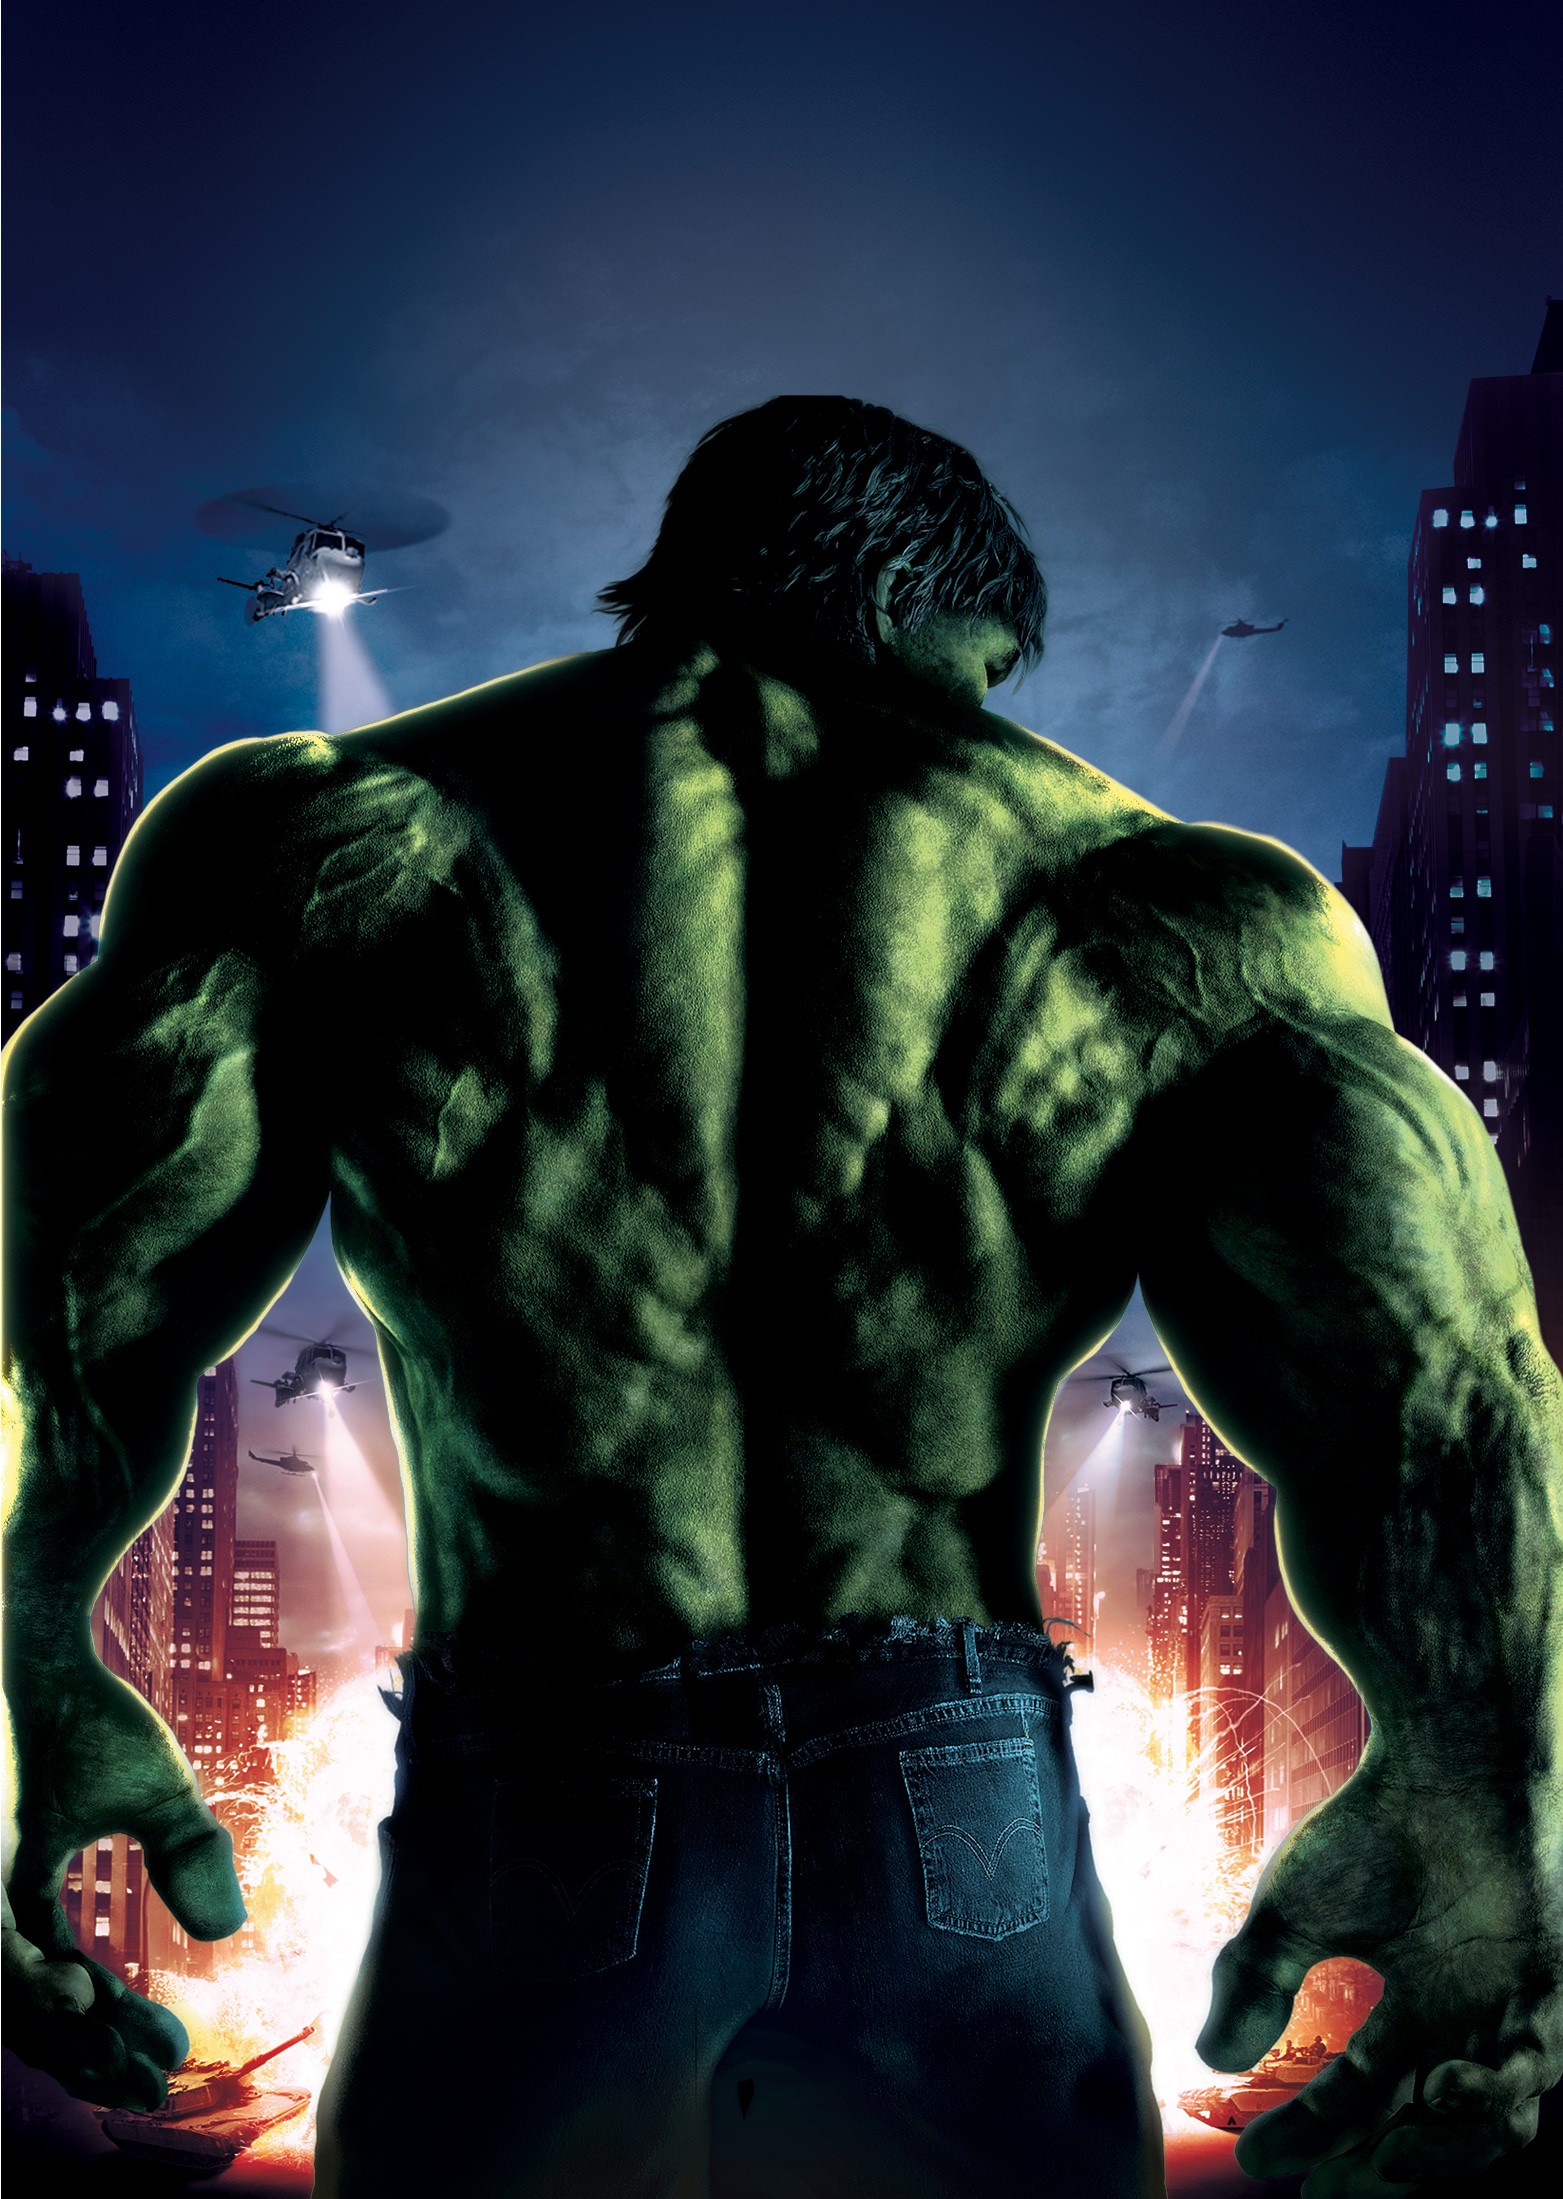 46+ Incredible Hulk iPhone Wallpaper on WallpaperSafari